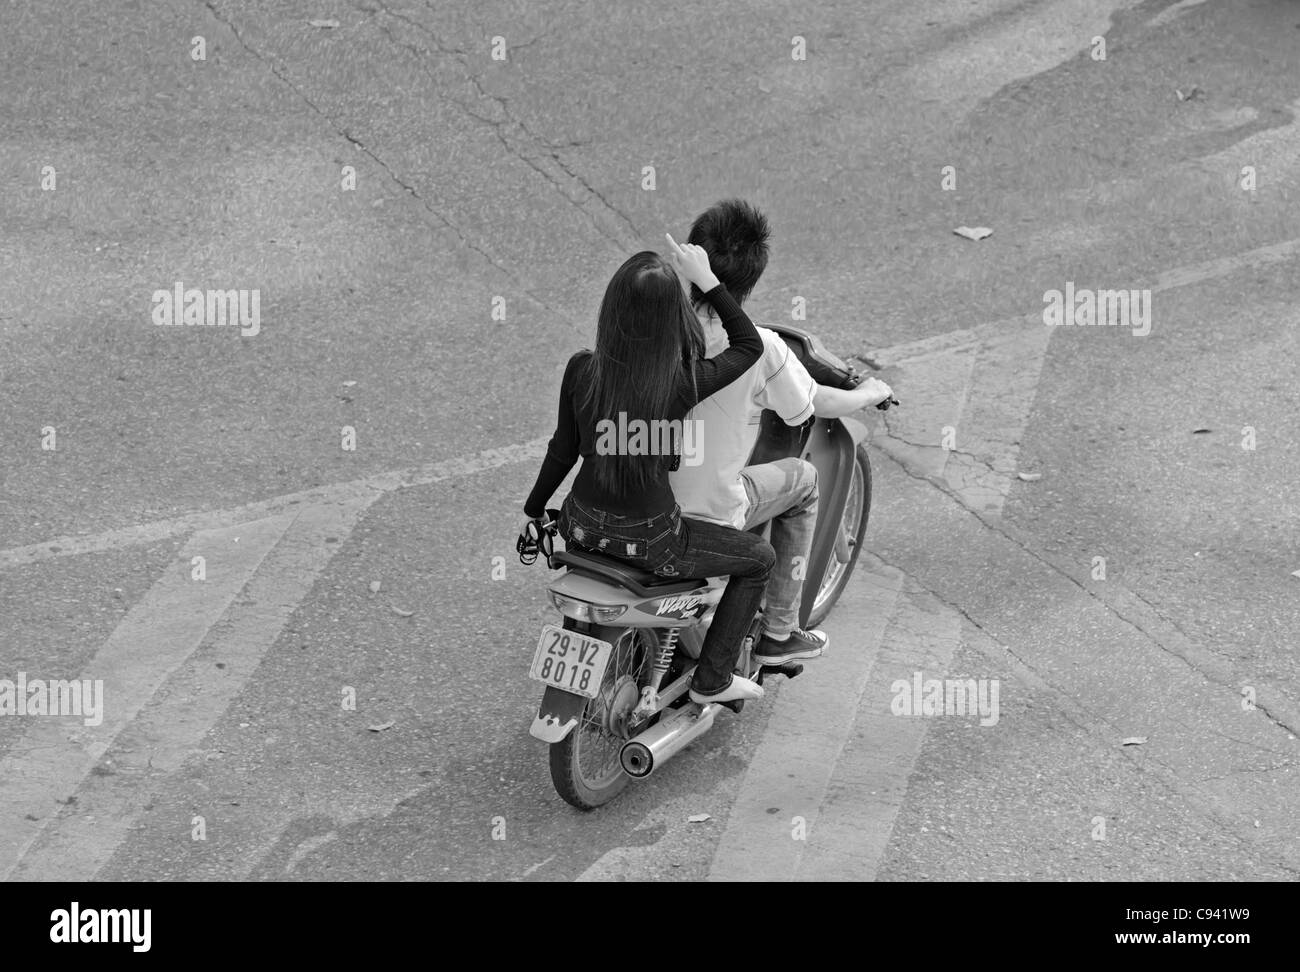 Asia, Vietnam, Hanoi. Hanoi old quarter. Vietnamese couple riding on a small motorbike through Hanoi. Stock Photo